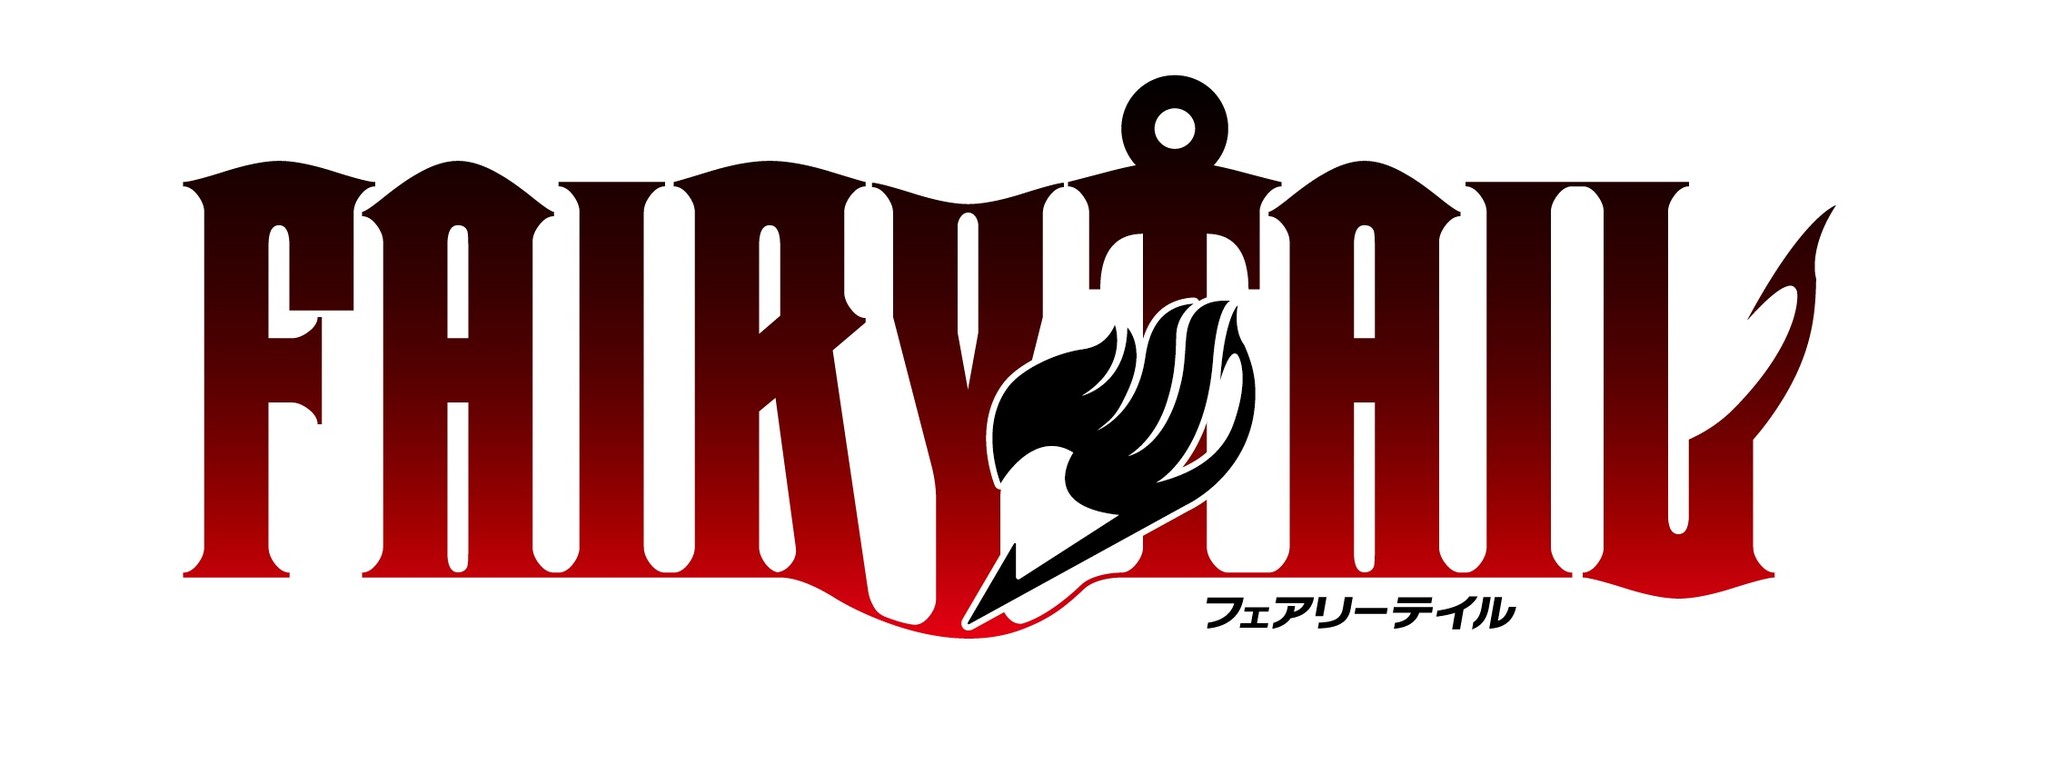 対戦パズル Rpg 対戦パズル バトルブレイブ 内で 人気アニメ Fairy Tail フェアリーテイル とのコラボイベントを開催 株式会社アクロディアのプレスリリース